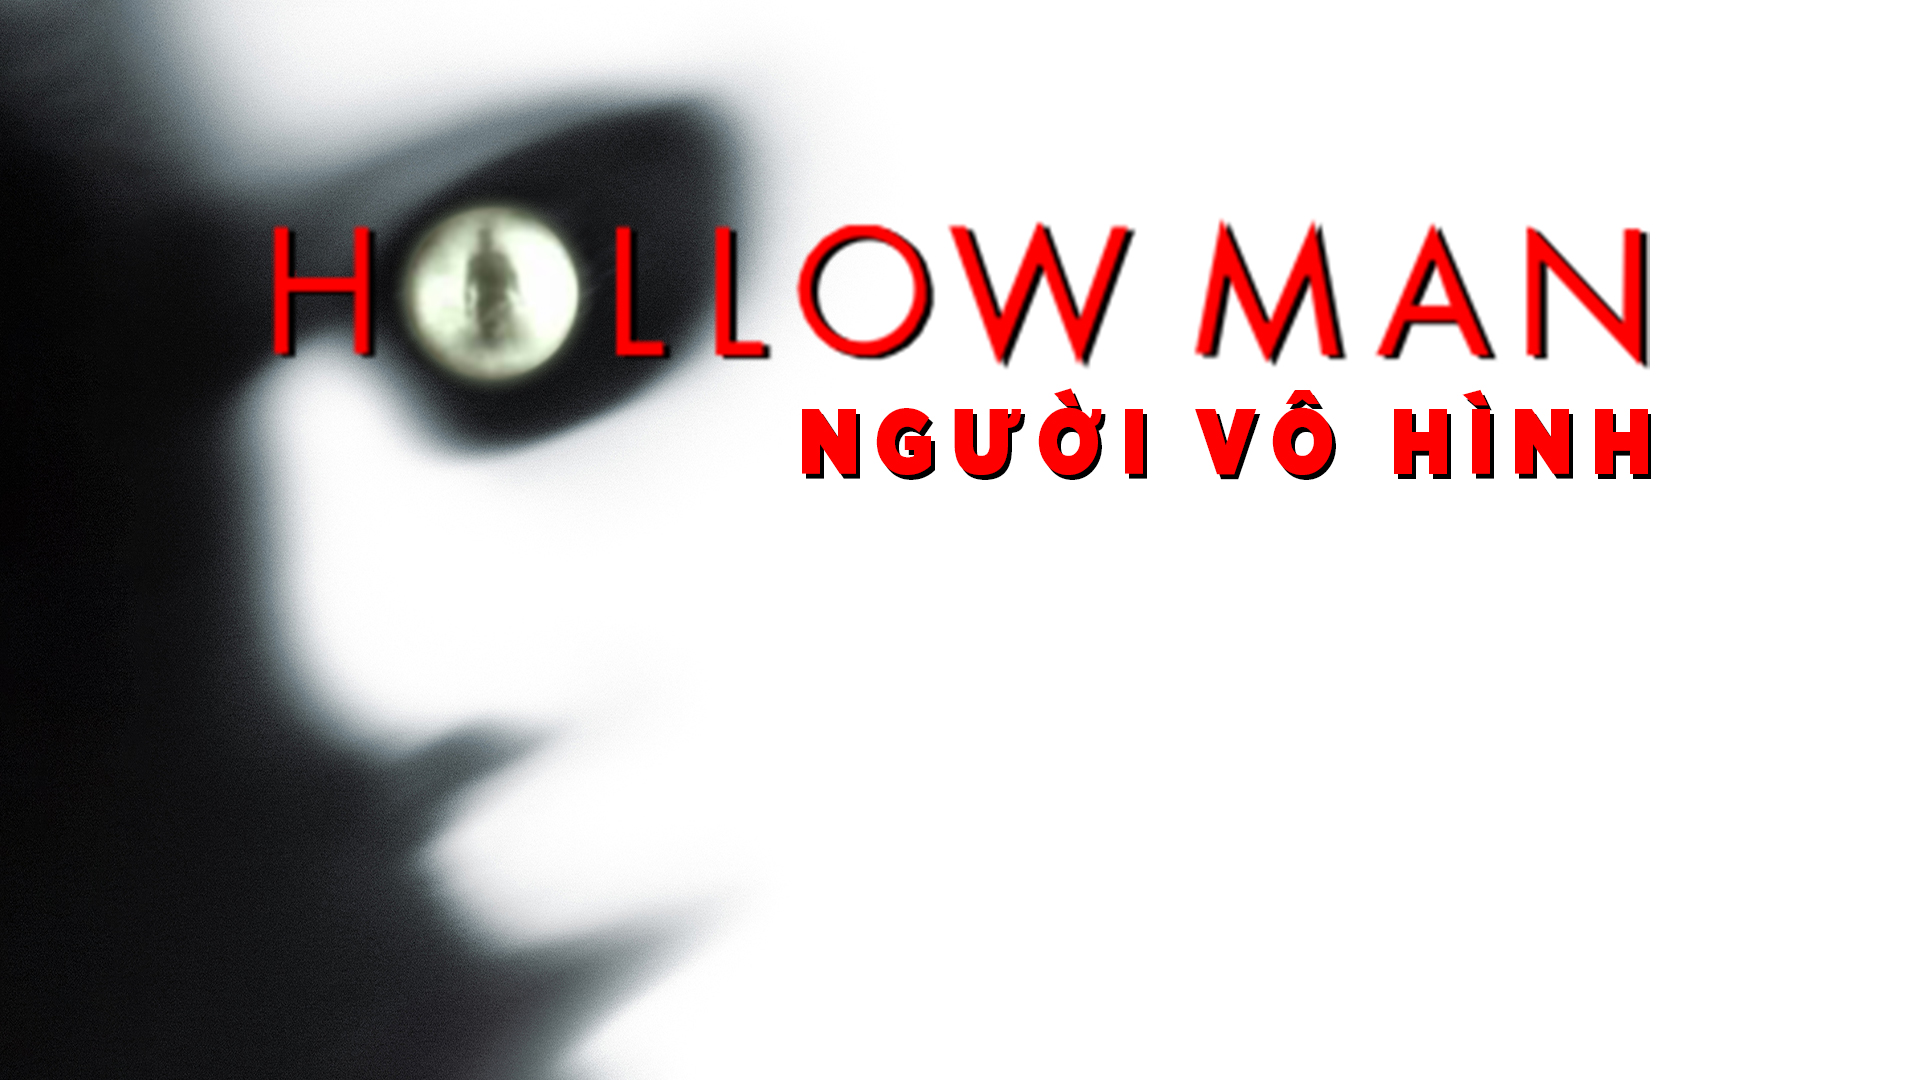 77. Phim Hollow Man (2000) - Người vô hình (2000)